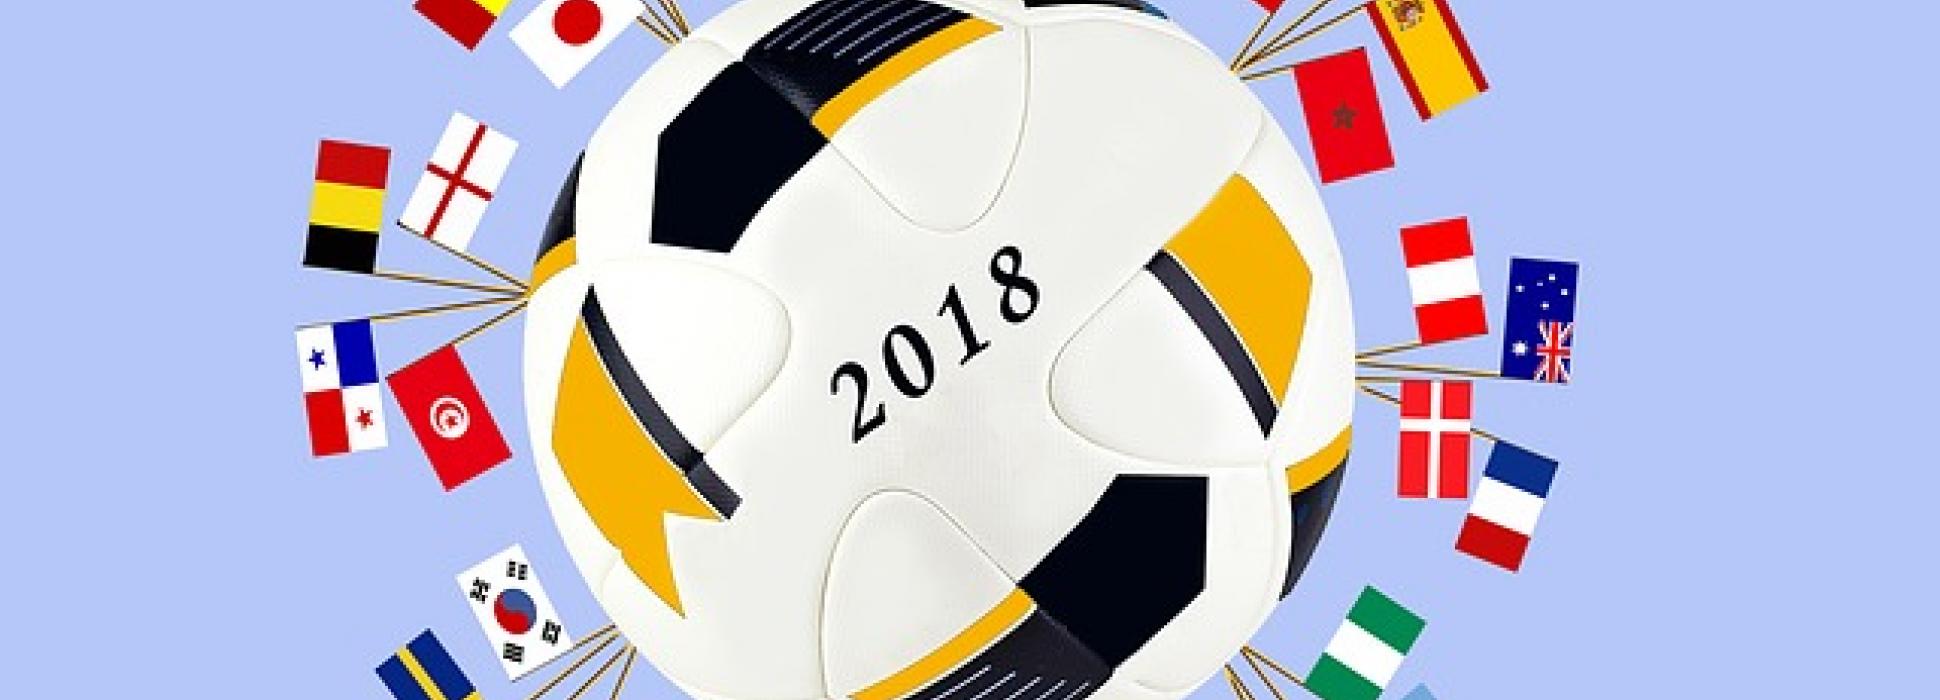 Coupe du monde 2018 : où regarder les matchs à Lorient et Saint-Nazaire